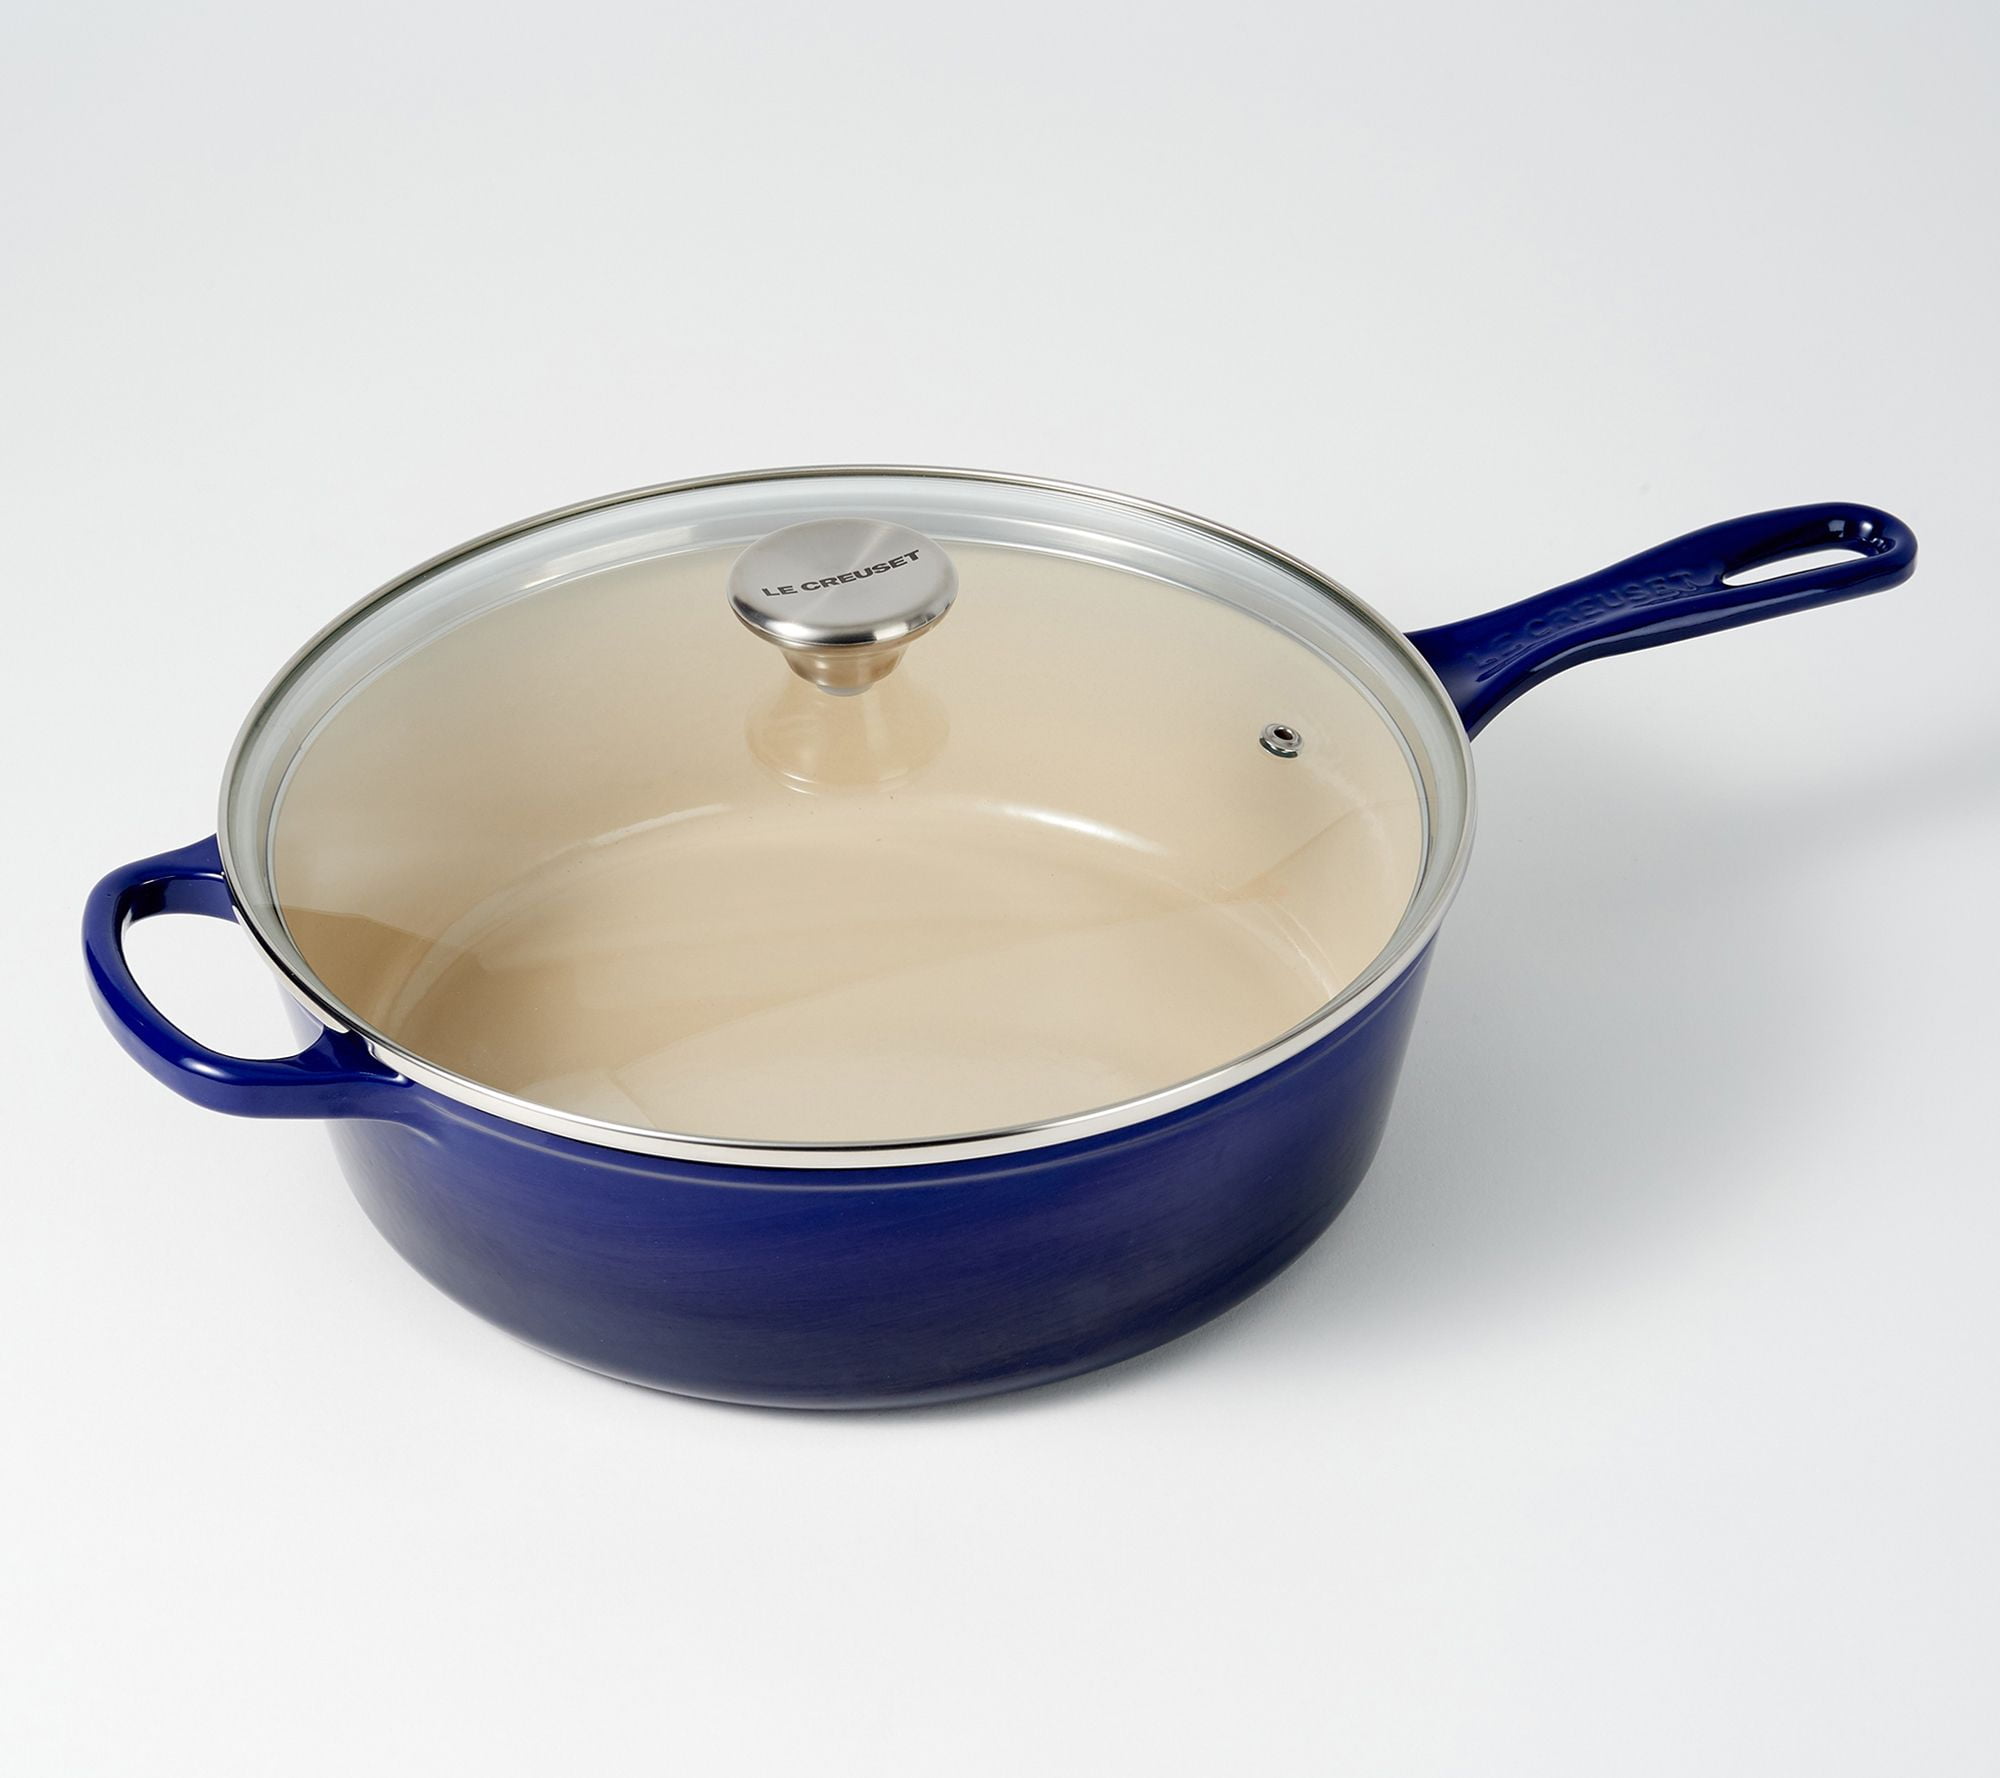 Vintage Le Creuset # 18 Enamel Ware Cast Iron Sauce Pan With Lid